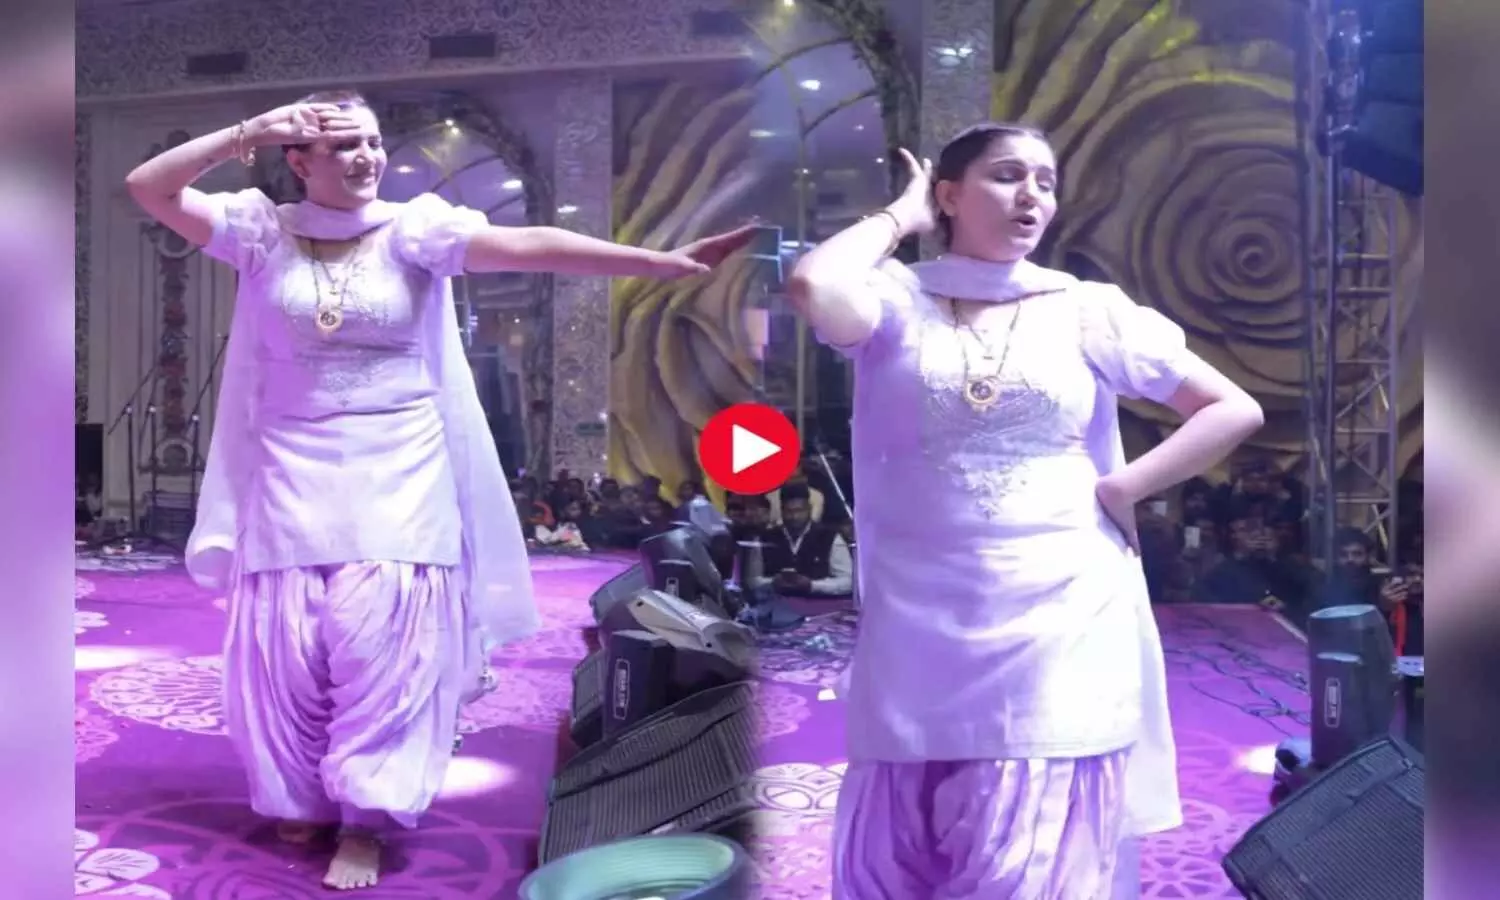 Sapna Choudhary Dance Video